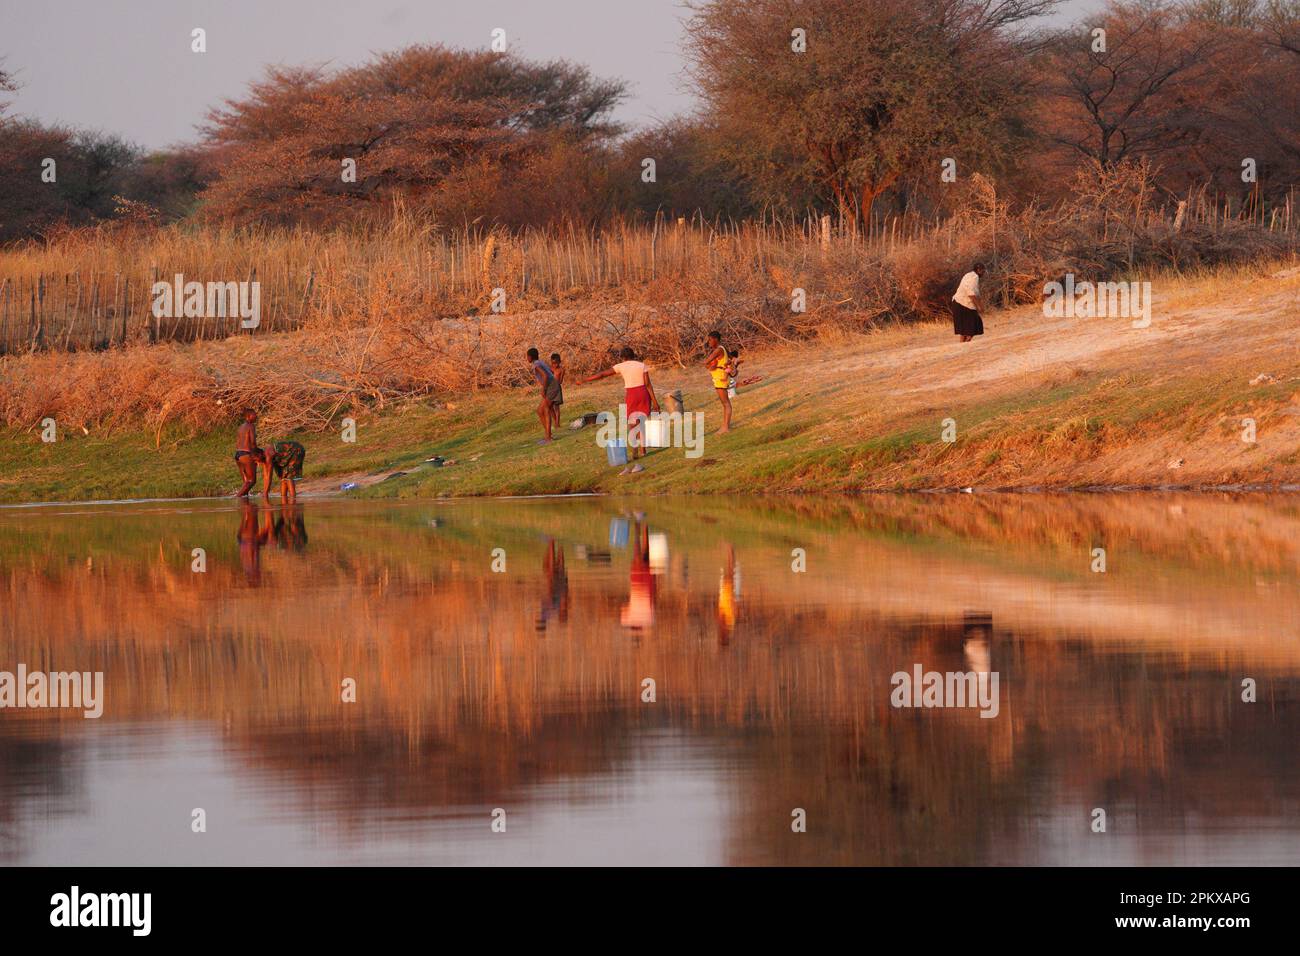 People fetching water from the Zambezi River Stock Photo